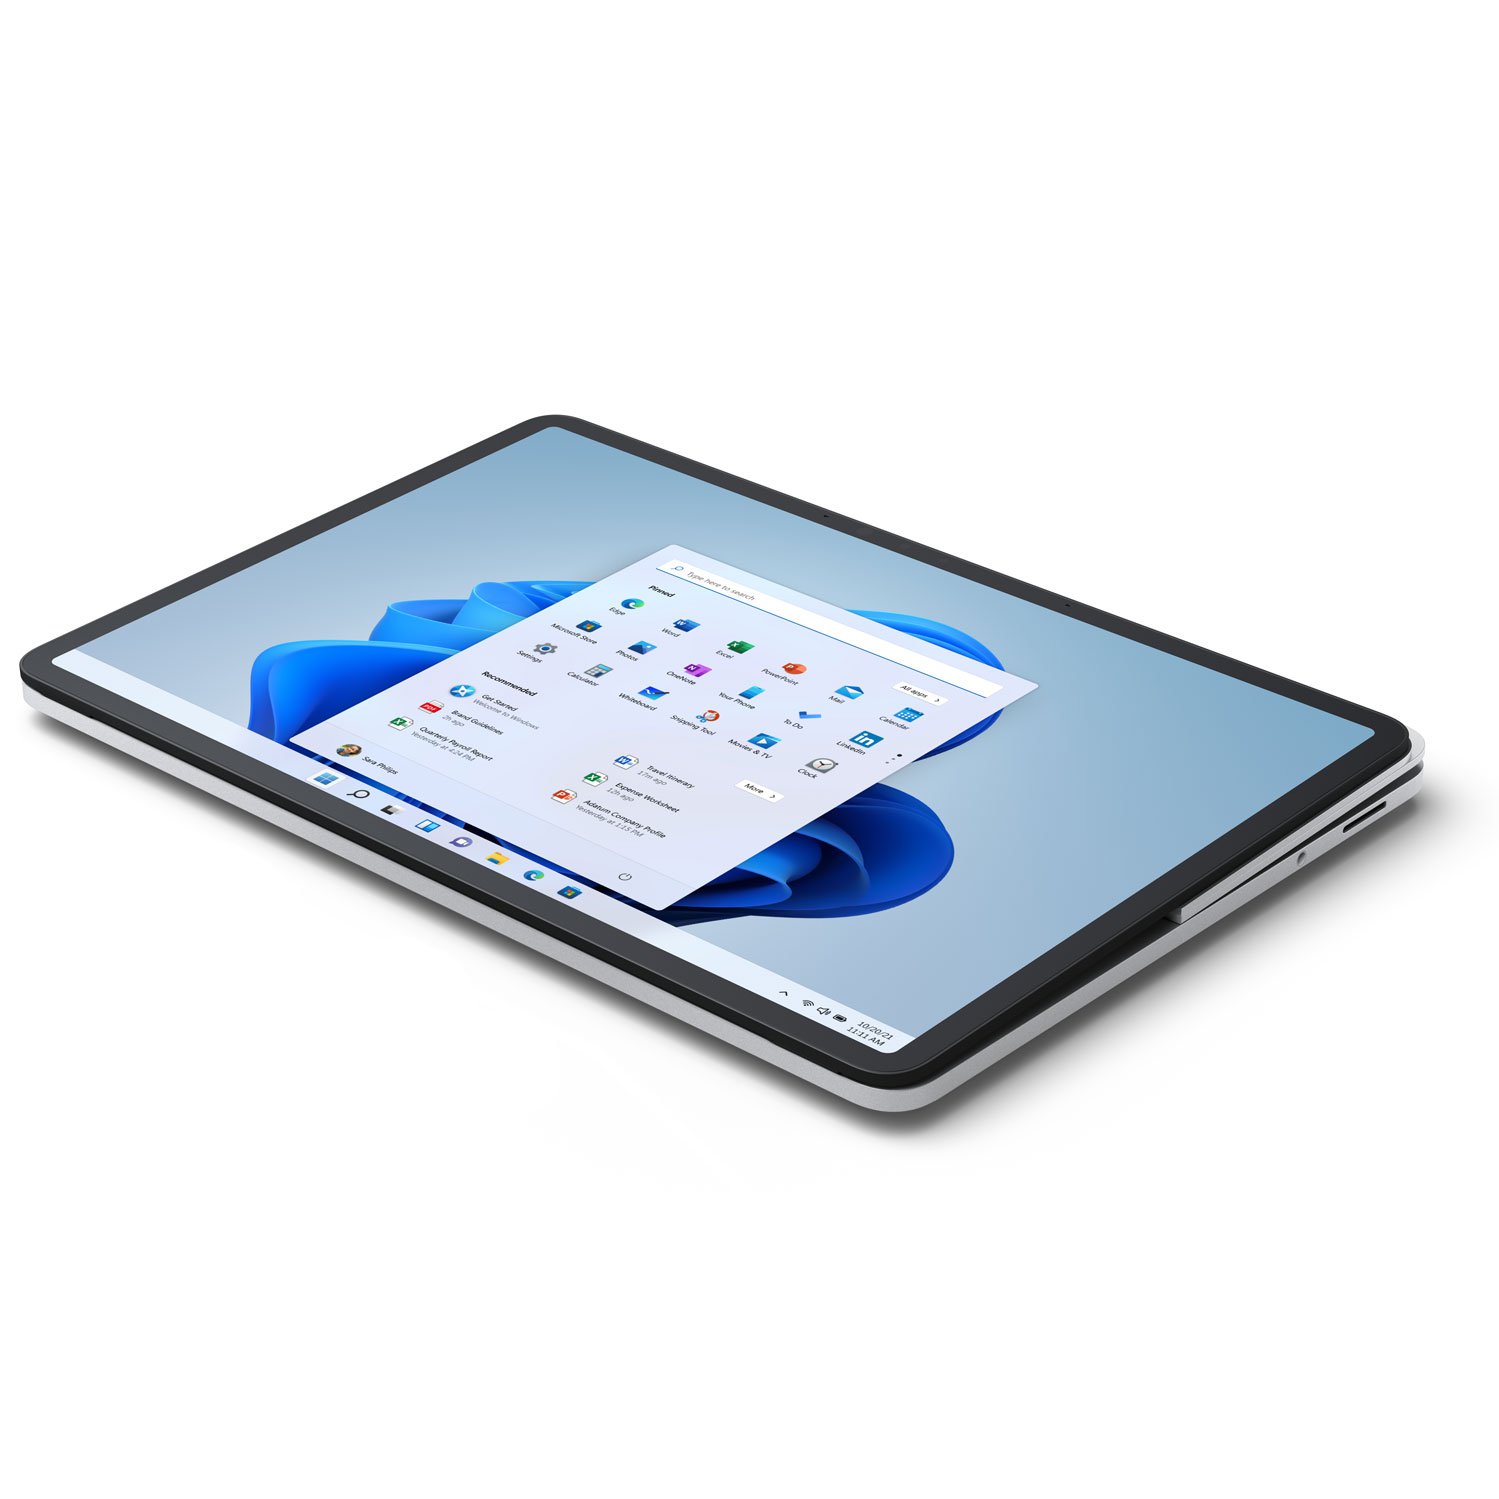 سرفیس لپ تاپ استودیو مایکروسافت 14 اینچ Core i7-32GB-1TB